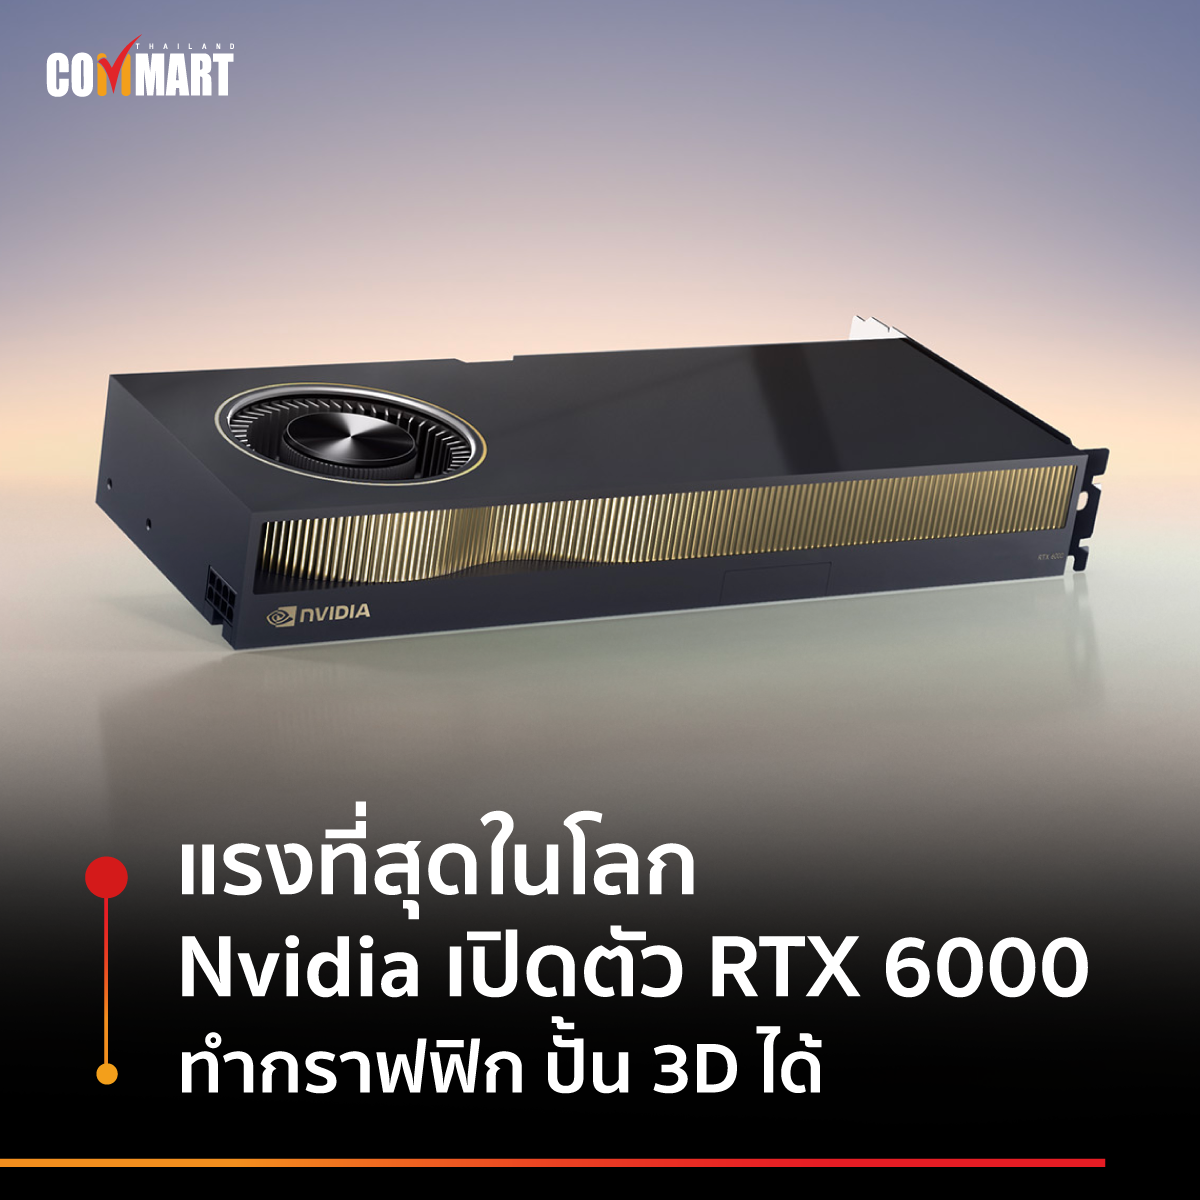 แรงที่สุดในโลก Nvidia เปิดตัว RTX 6000 ทำกราฟฟิก ปั้น 3D ได้